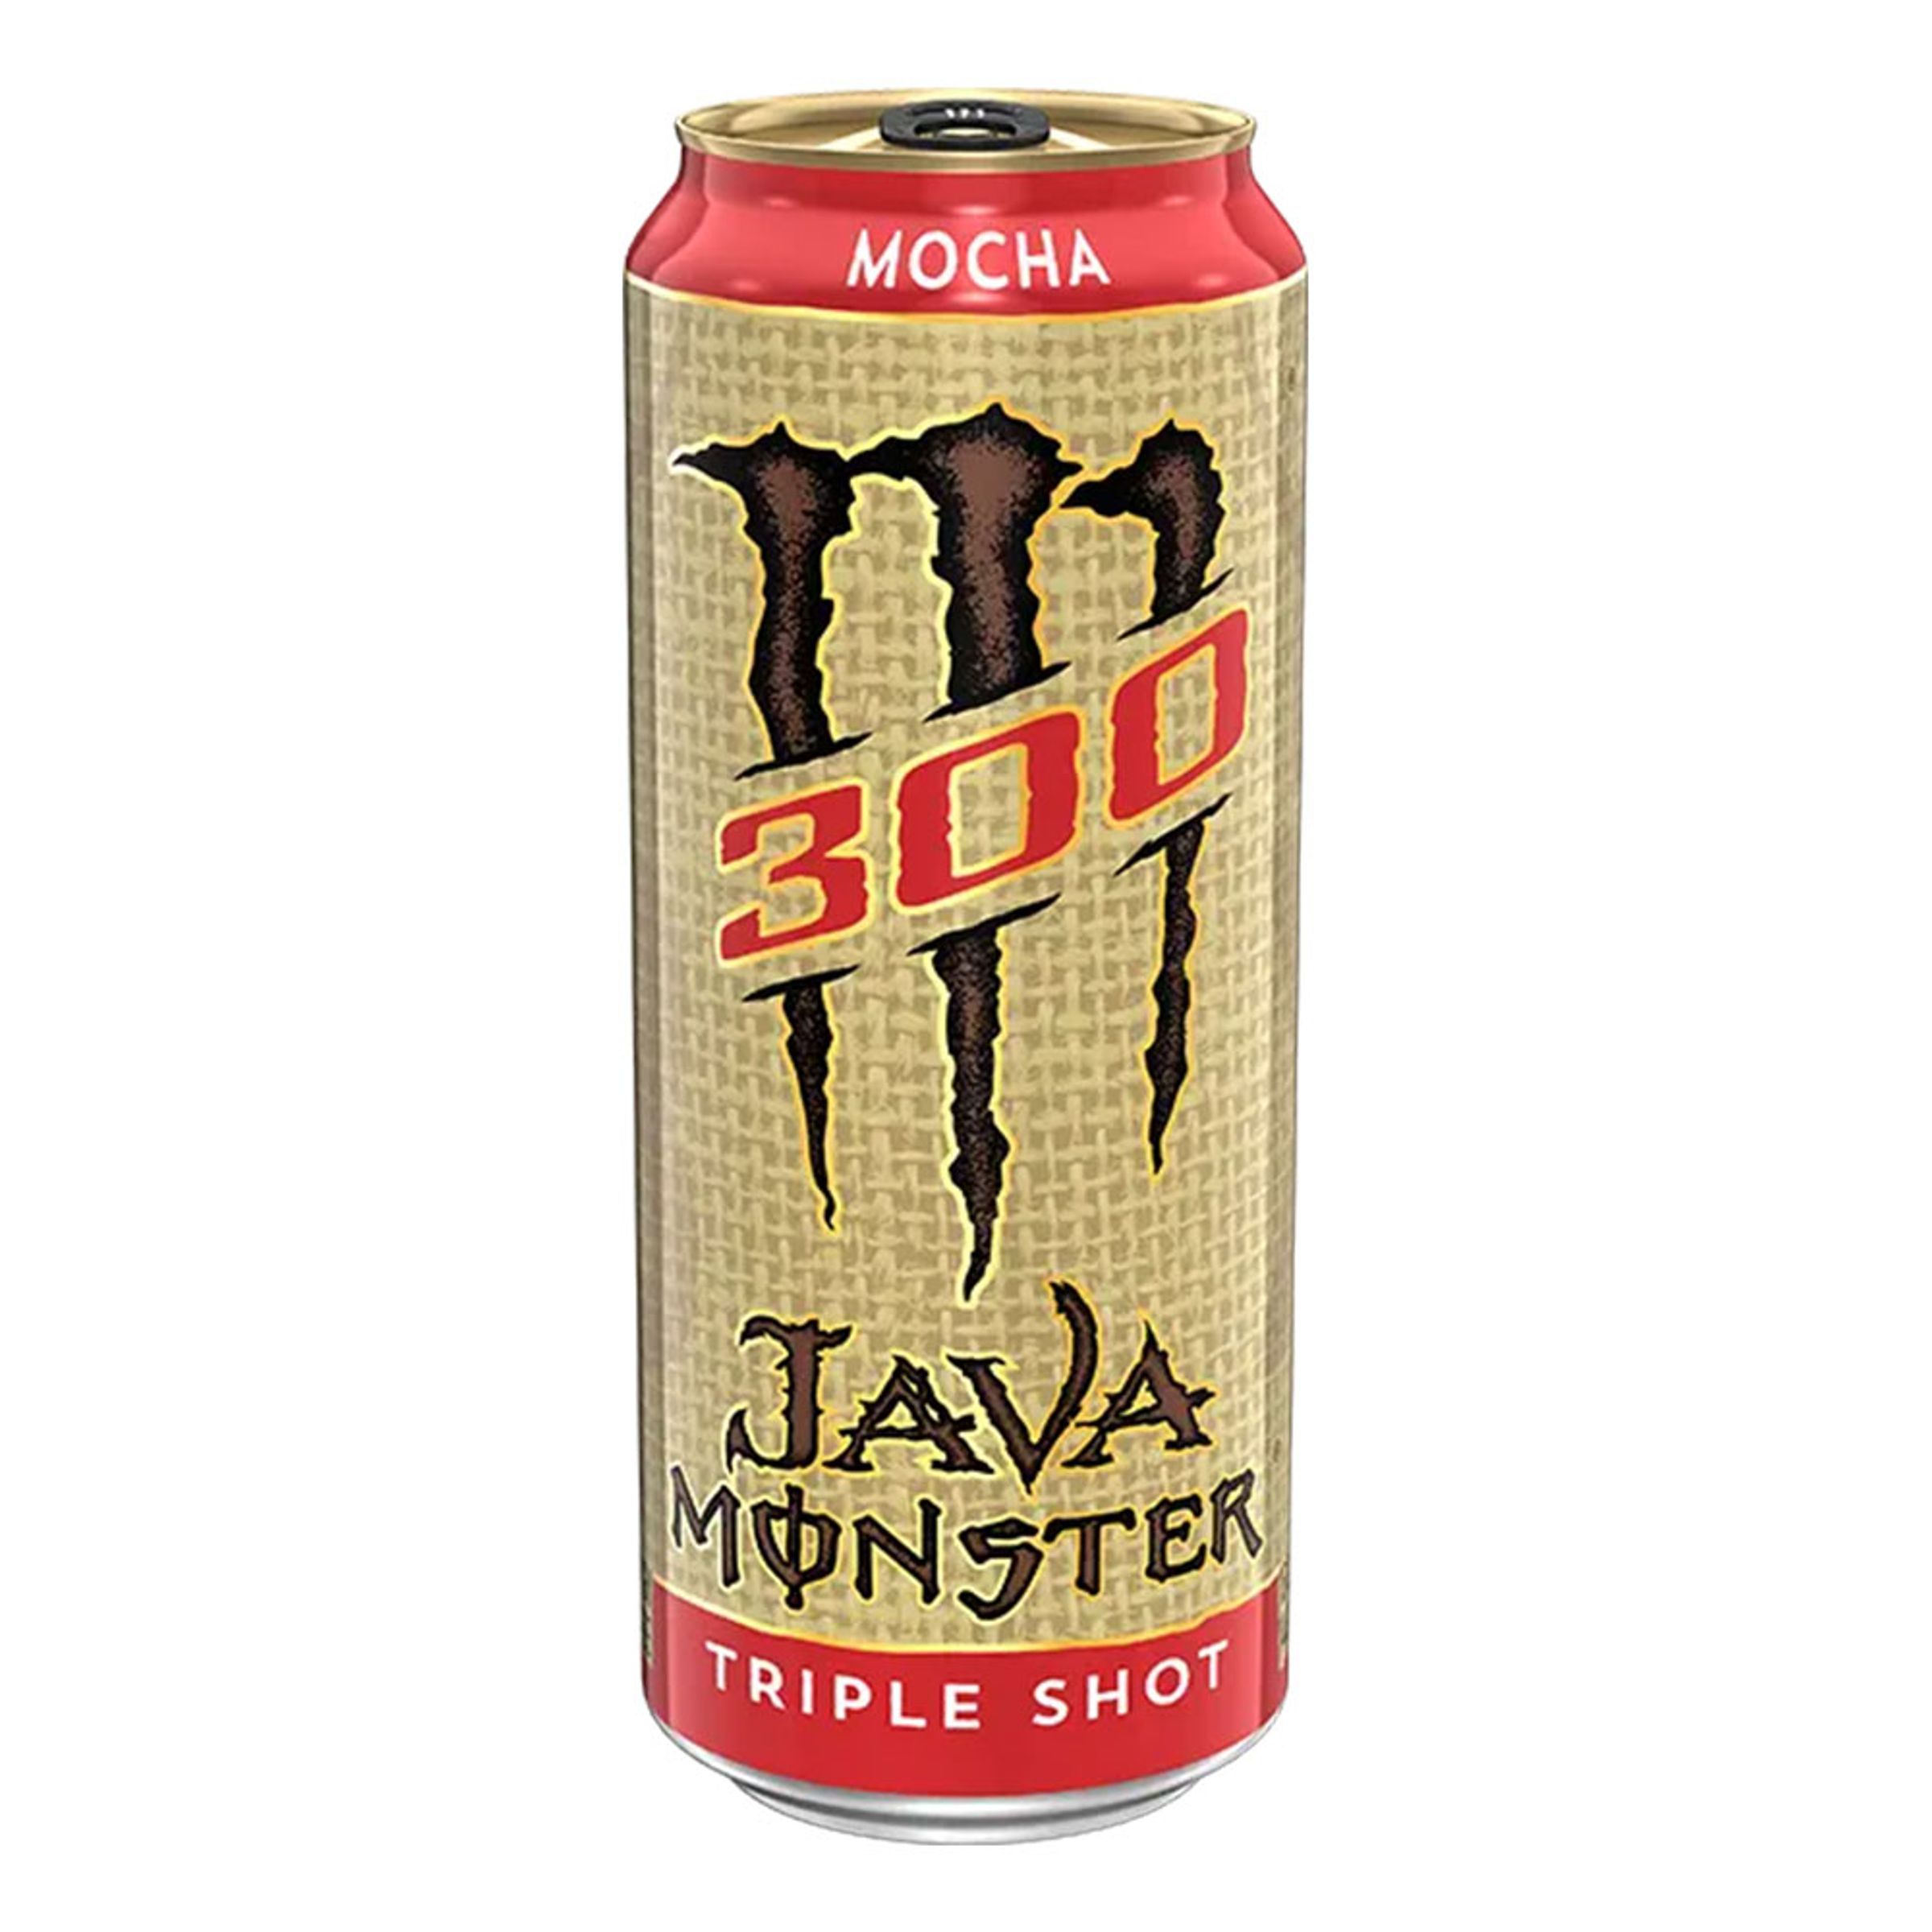 Monster Java 300 Mocha Triple Shot - 444 ml